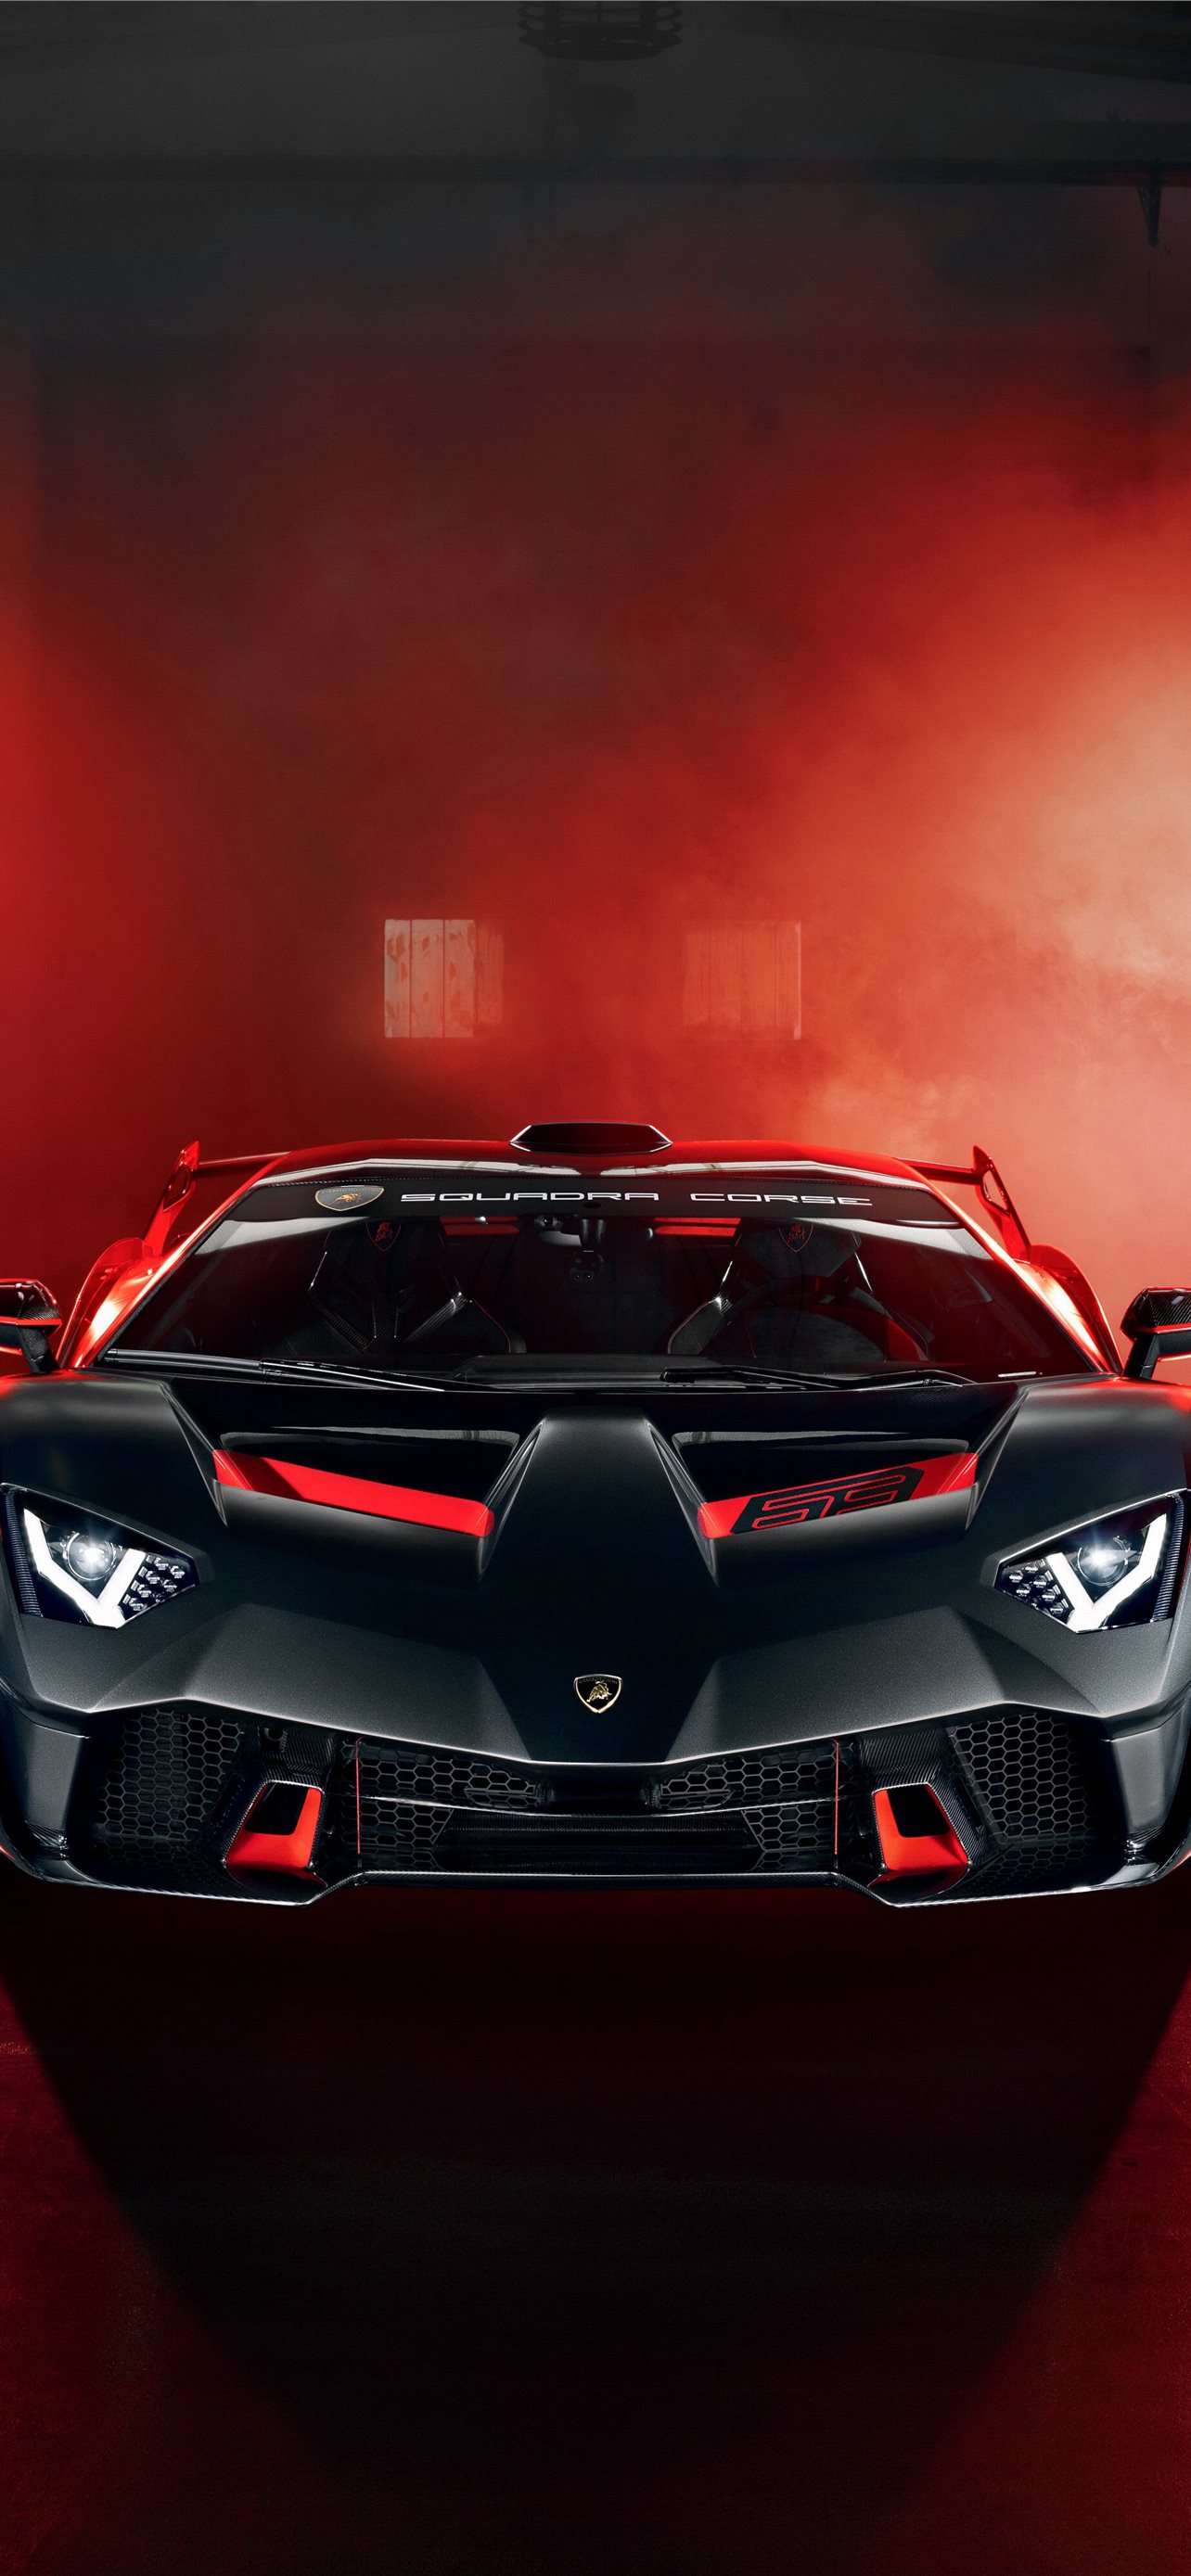 Hình nền Lamborghini: Cảm nhận đẳng cấp và tốc độ của những chiếc siêu xe Lamborghini với hình nền tuyệt đẹp này. Hãy dùng nó để trang trí cho thiết bị của bạn và cảm nhận sự sang trọng và tinh tế mà mỗi chi tiết trên mẫu xe mang lại.